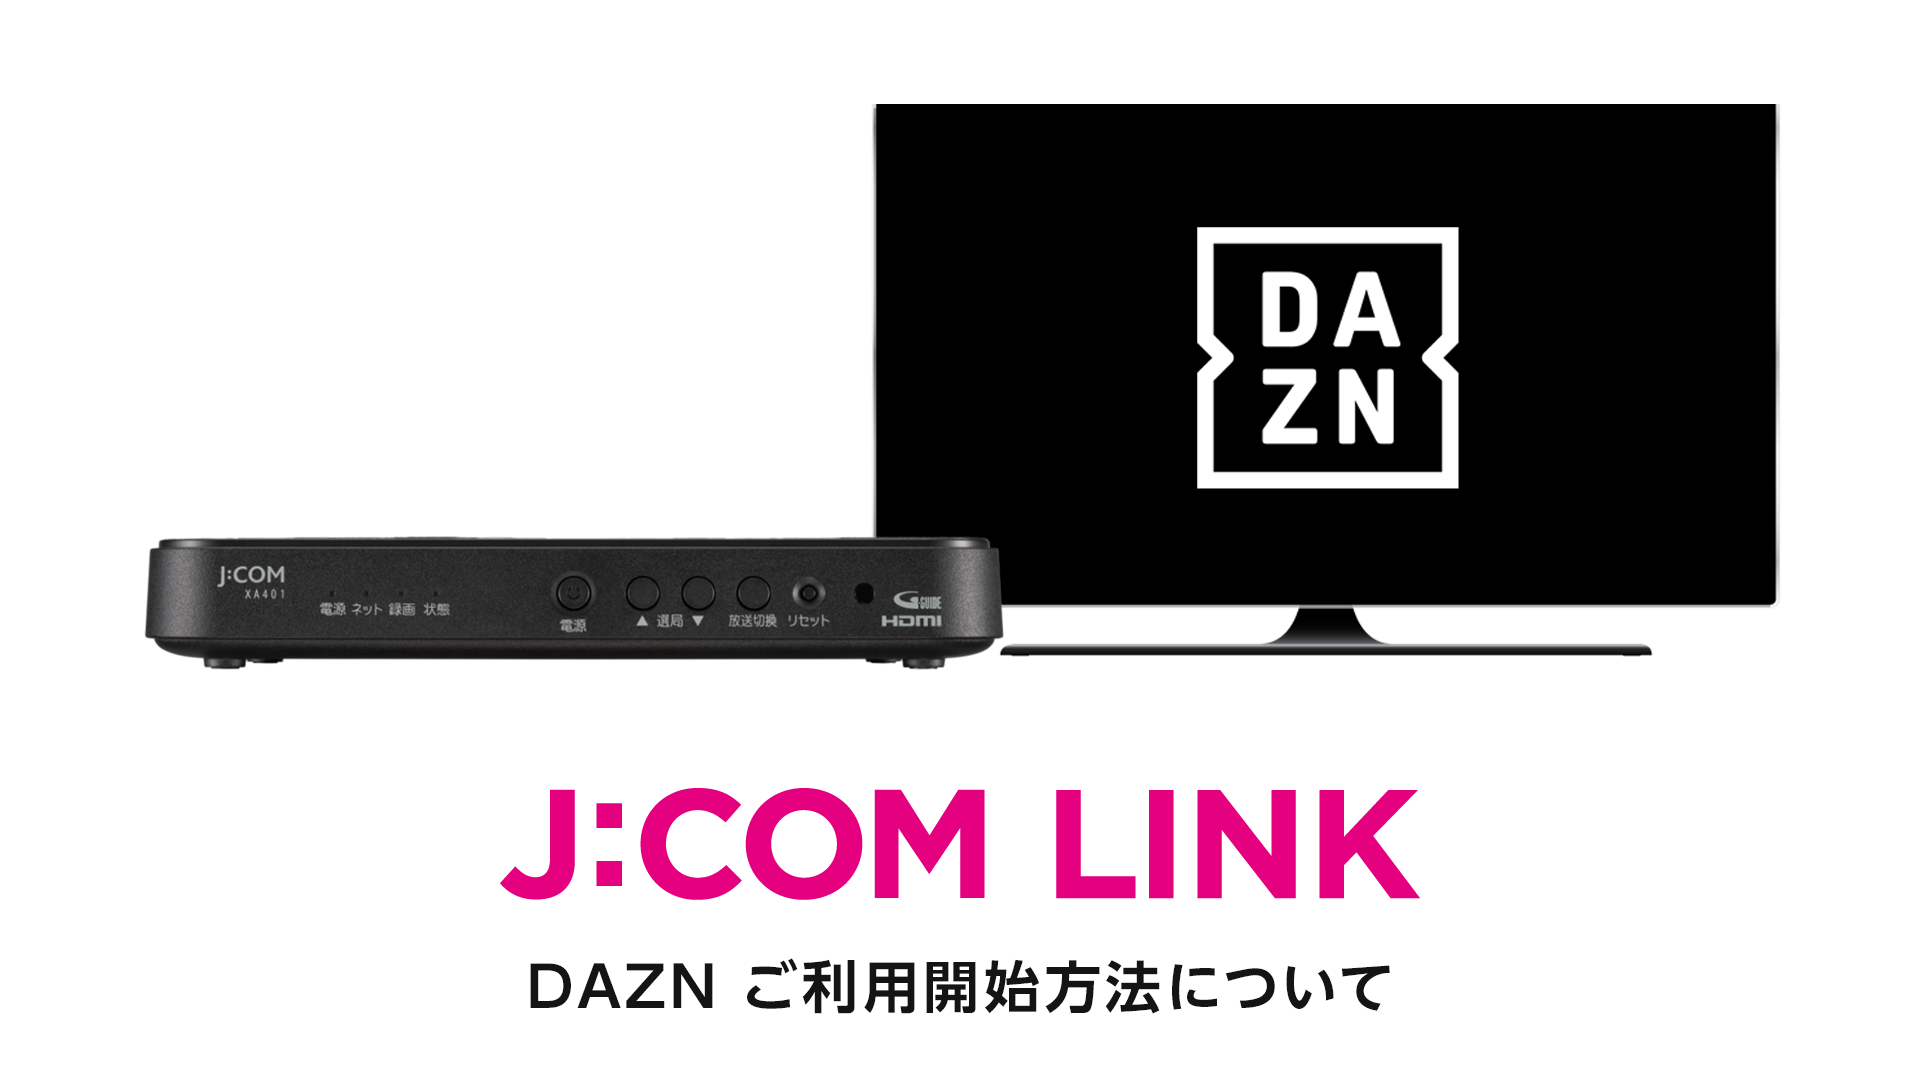 J:COM LINK - DAZN ご利用開始方法について（動画）